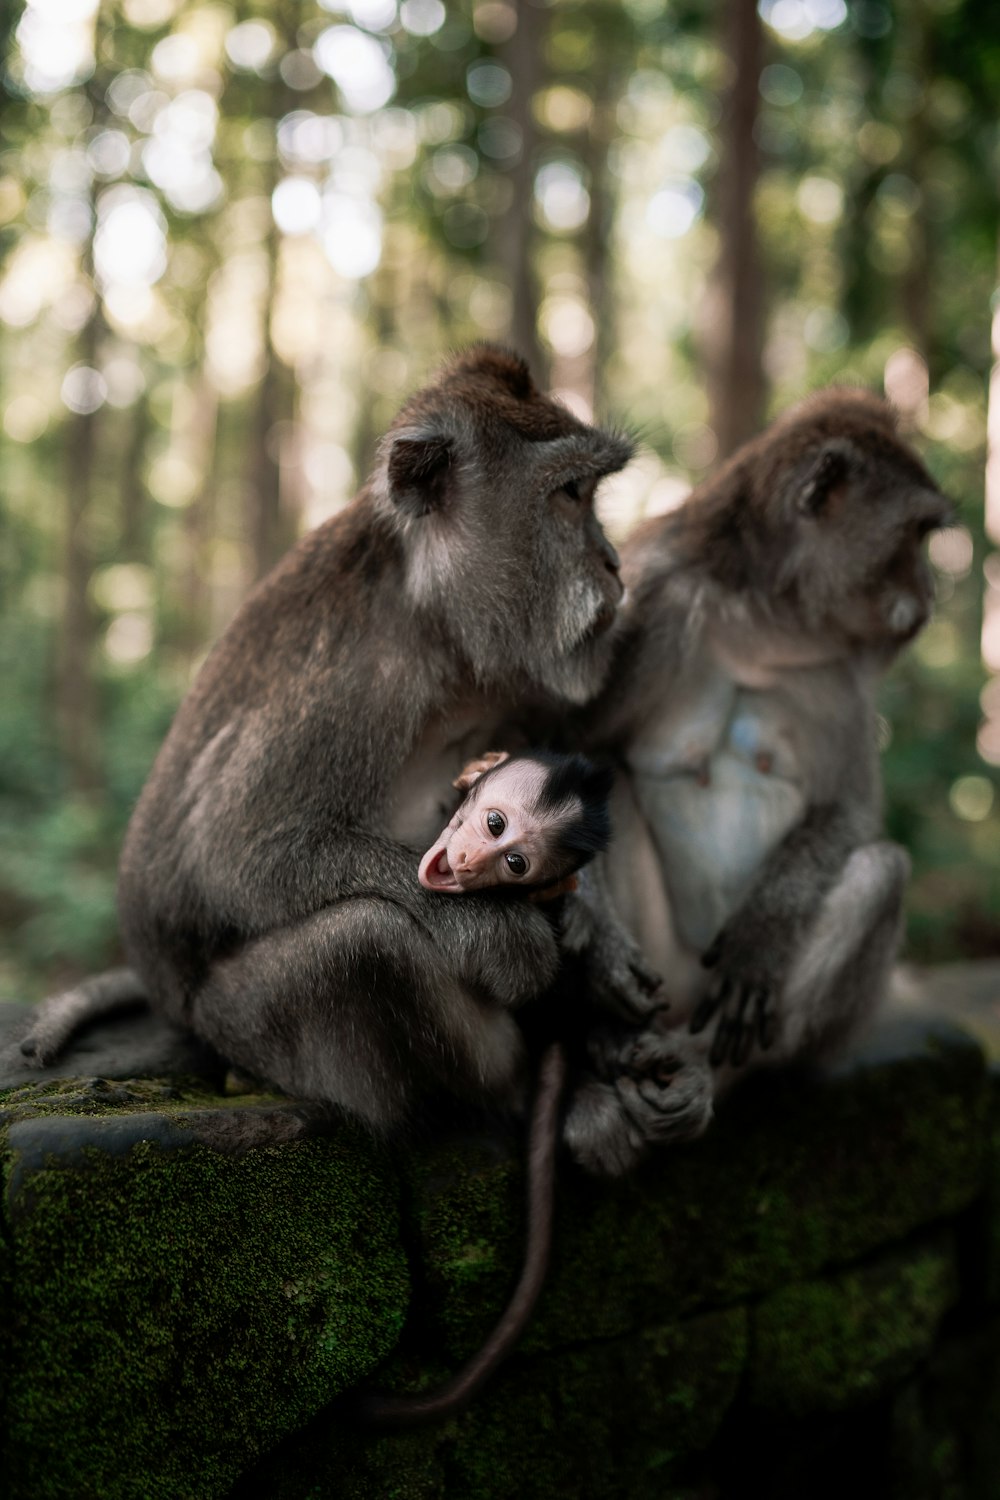 바위 위에 앉아 있는 원숭이 두 마리